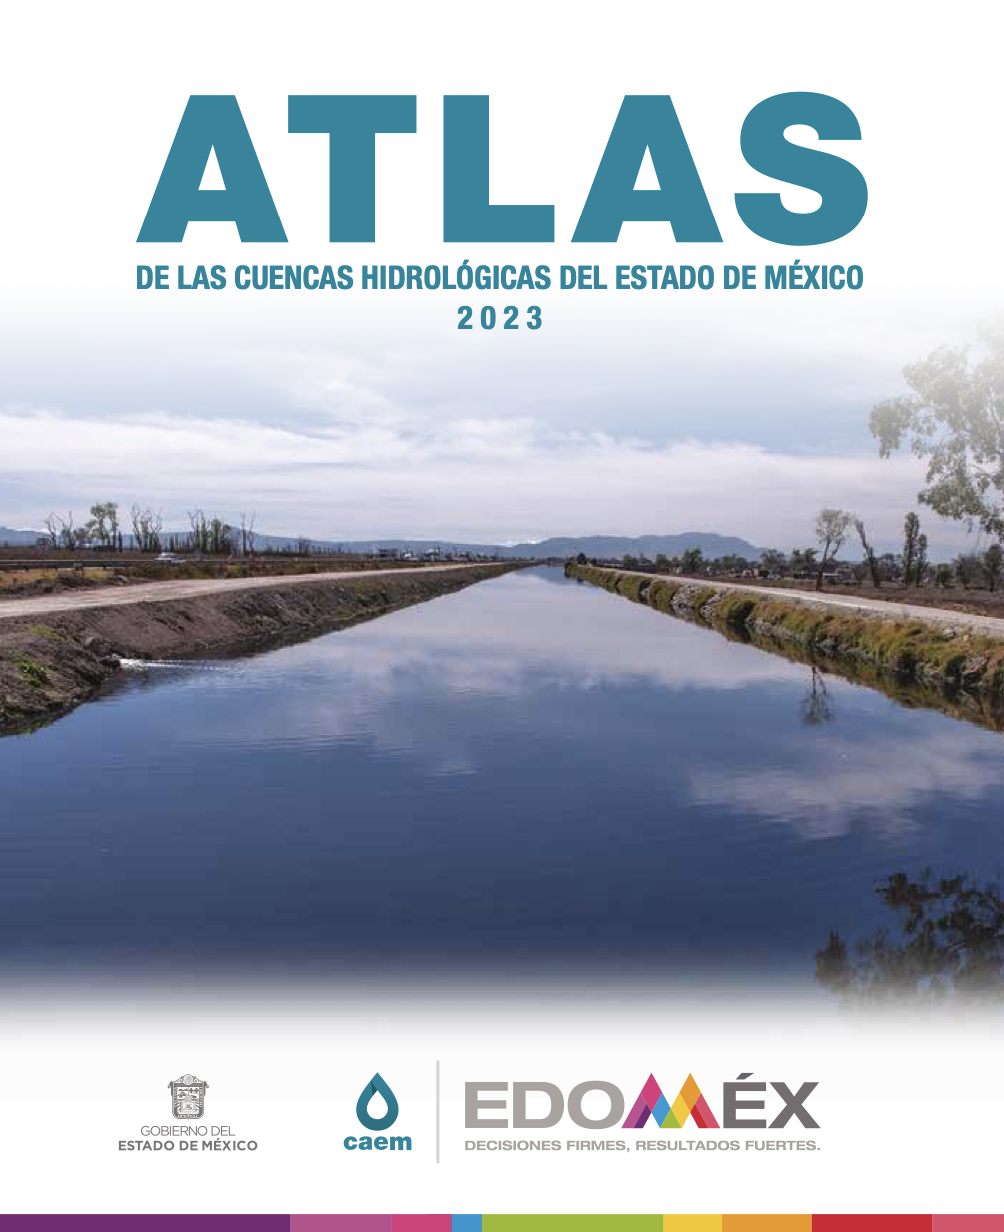 Atlas de las Cuencas Hidrológicas del Estado de México 2023 (CAEM)